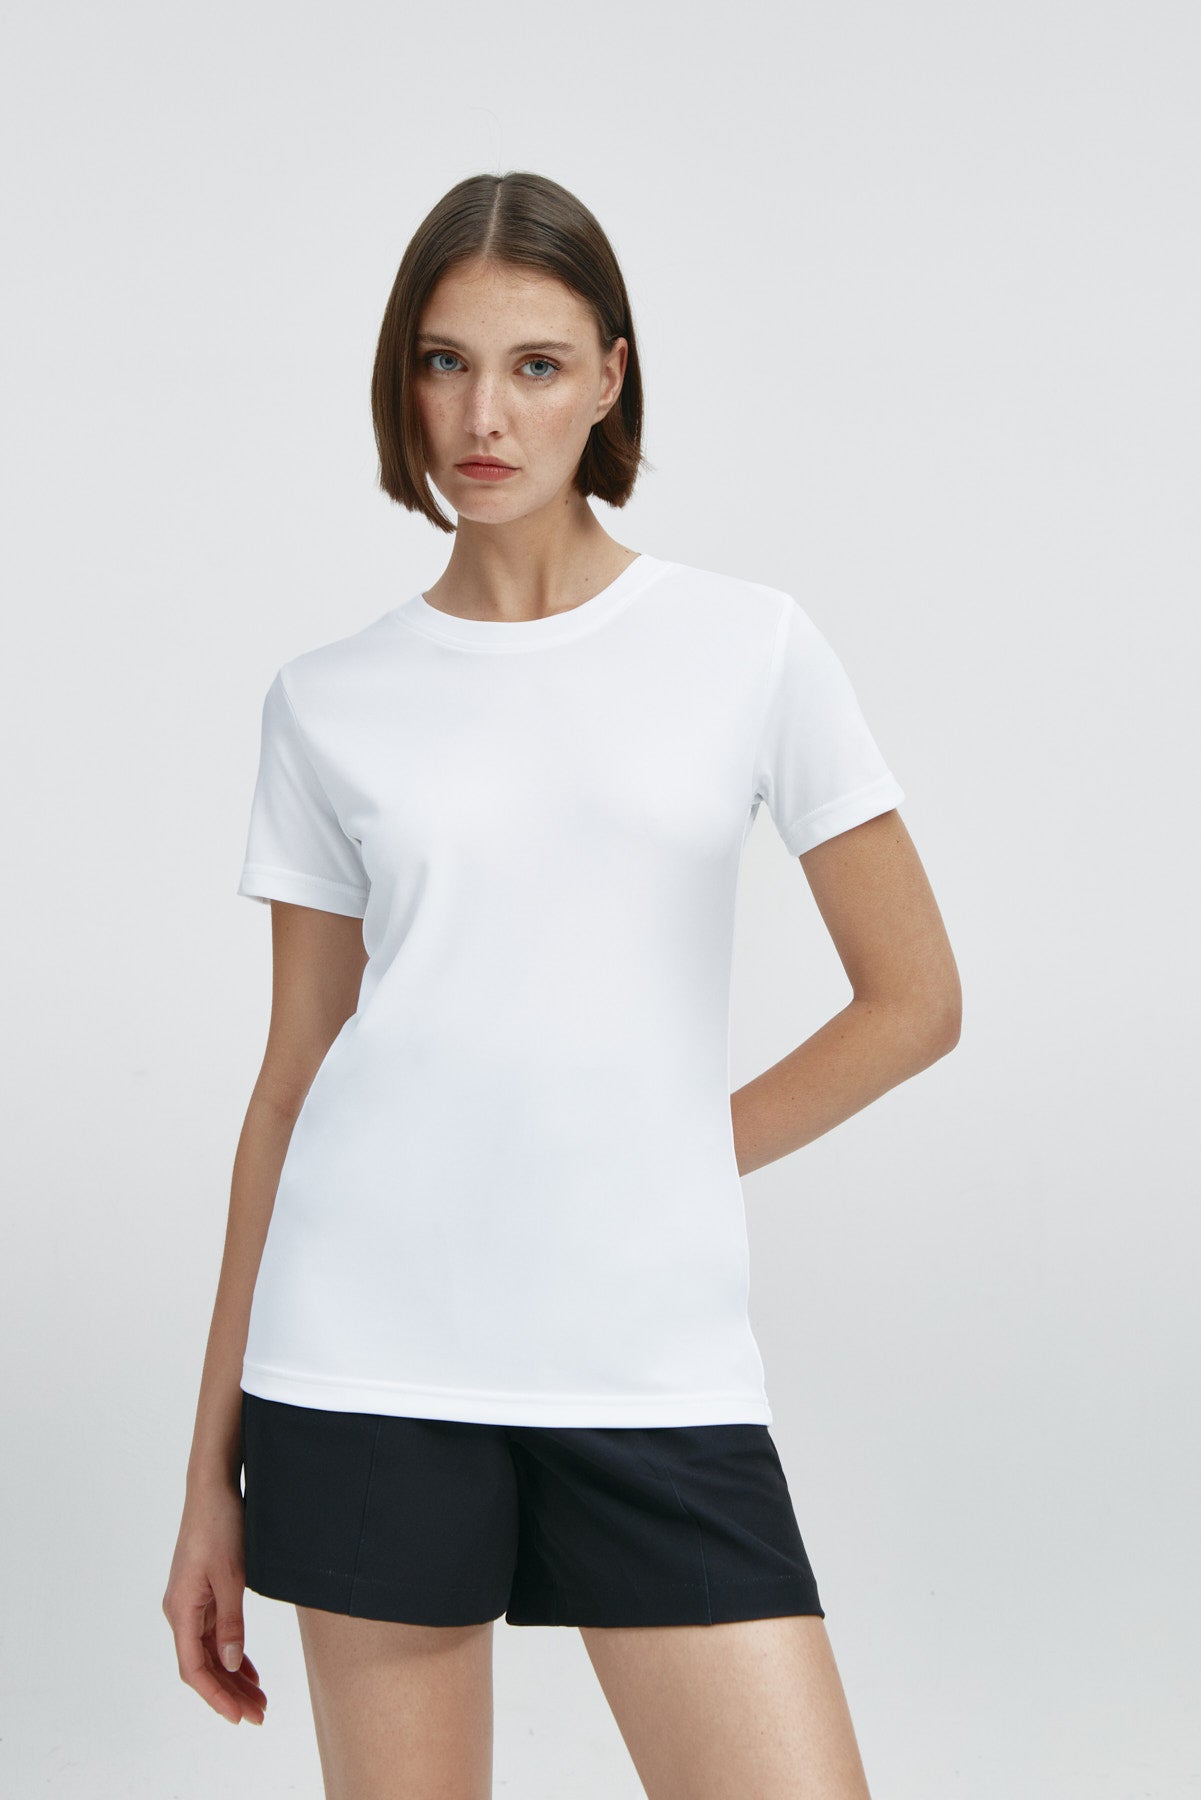 Camiseta básica de mujer blanca de manga corta, antiarrugas y antimanchas. Foto frente